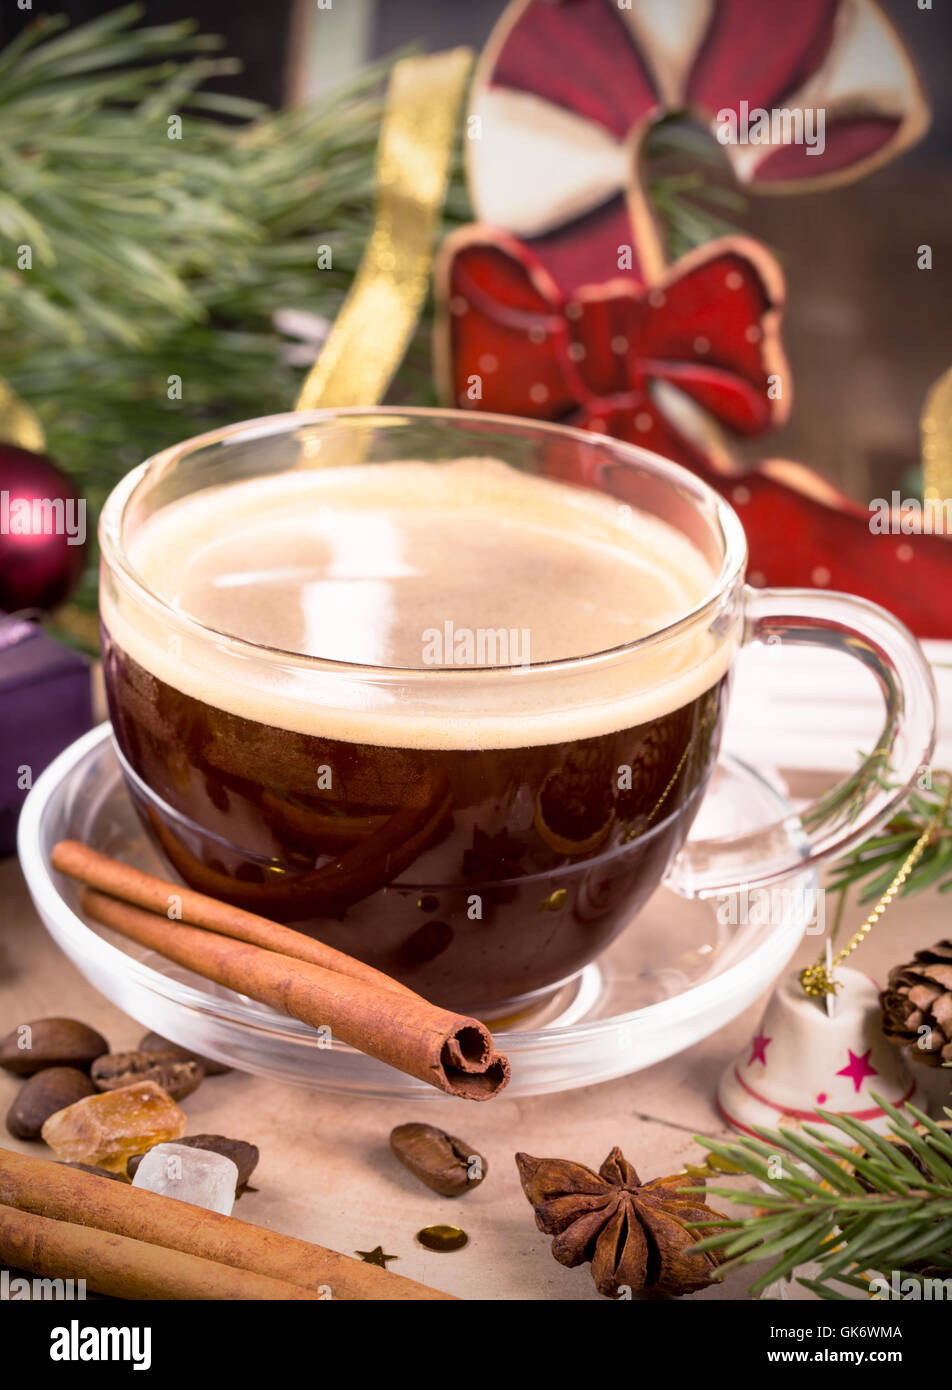 Tasse de café parmi les décorations de Noël Banque D'Images